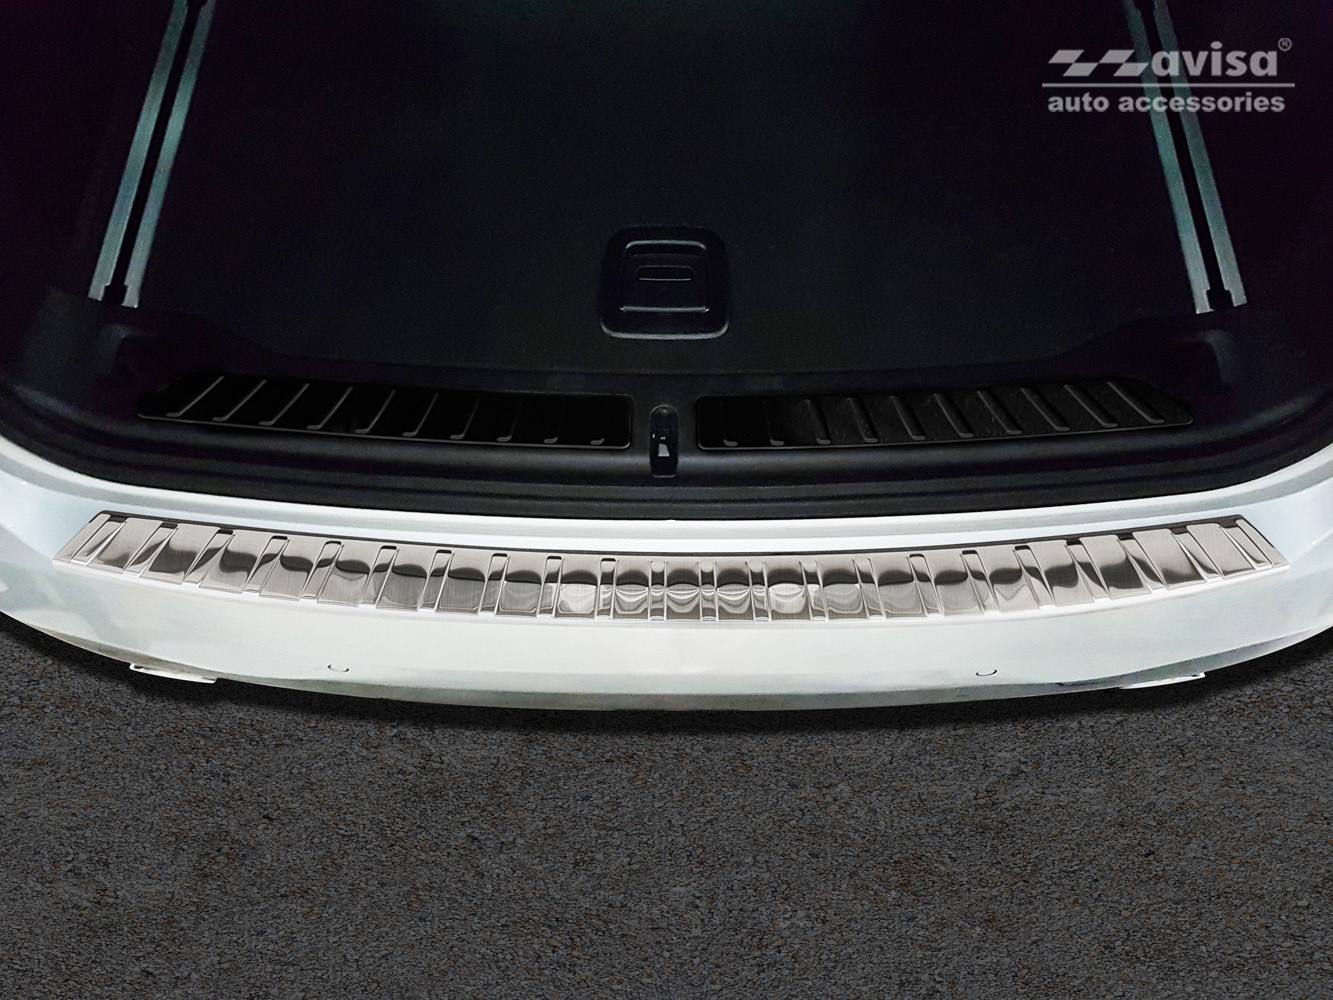 Premium Maluch für X3 - Autozubehör G01 Ladekantenschutz BMW